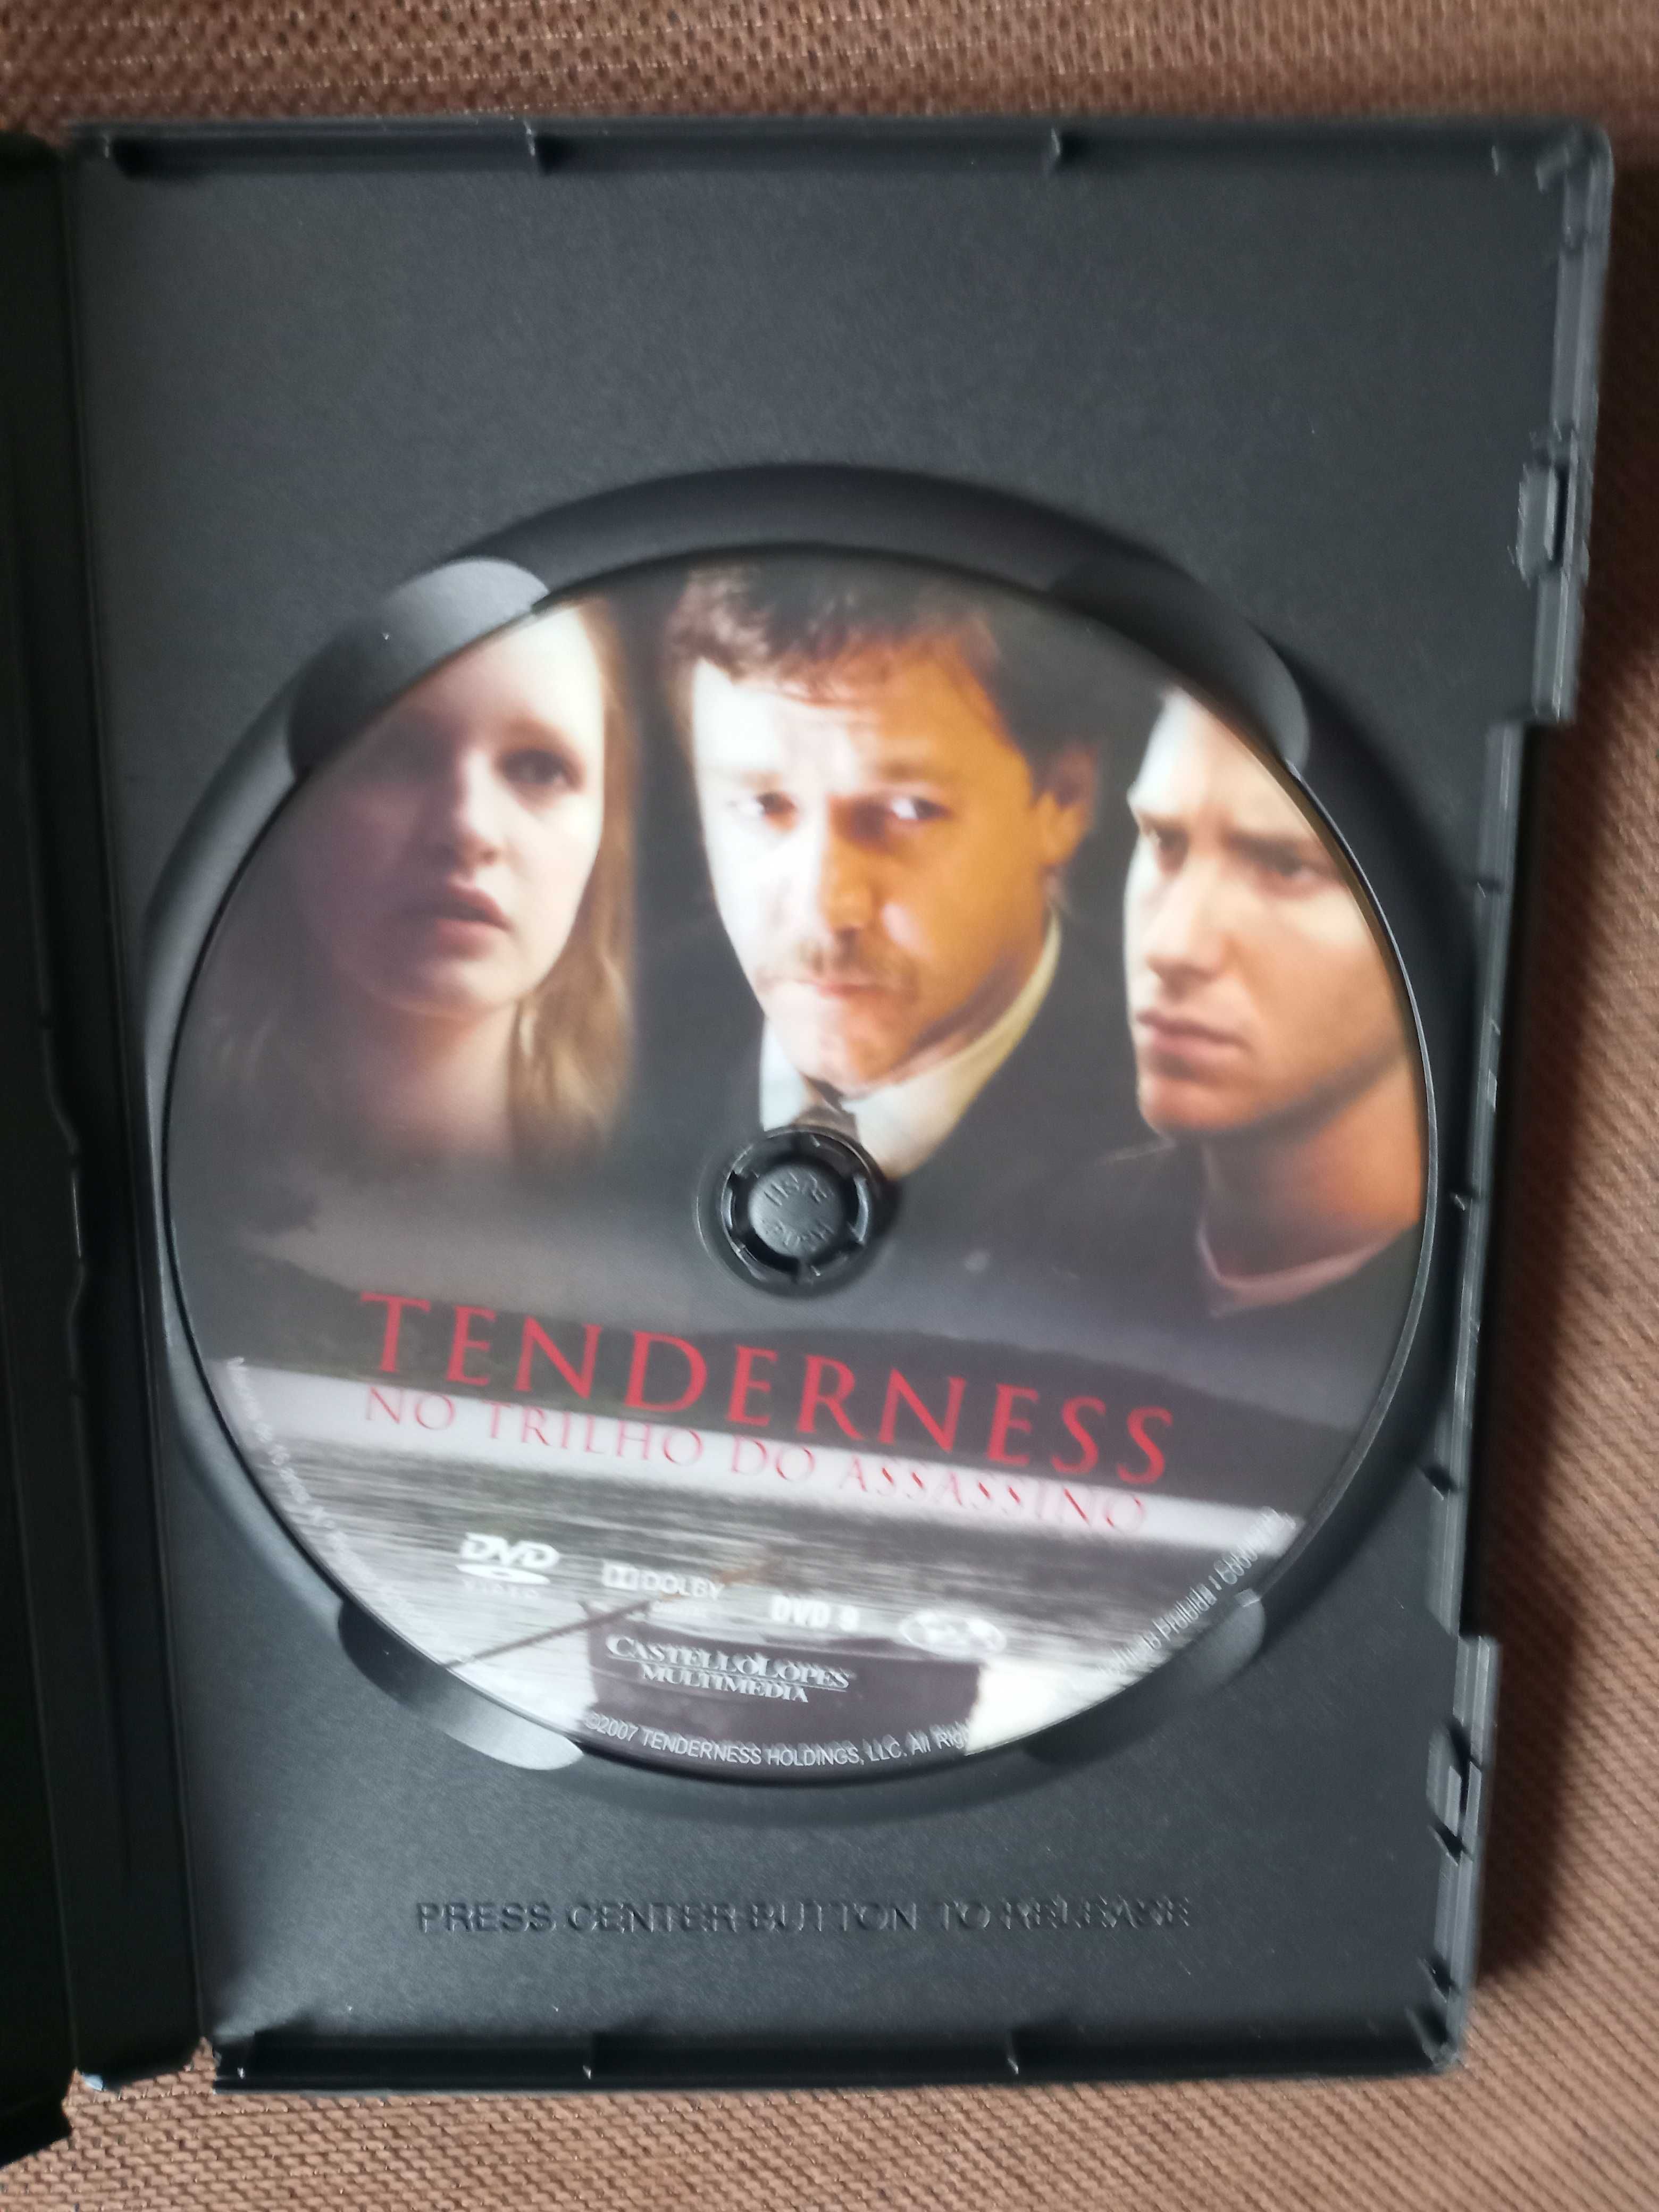 filme - tenderness - mo trilho do assassino - original